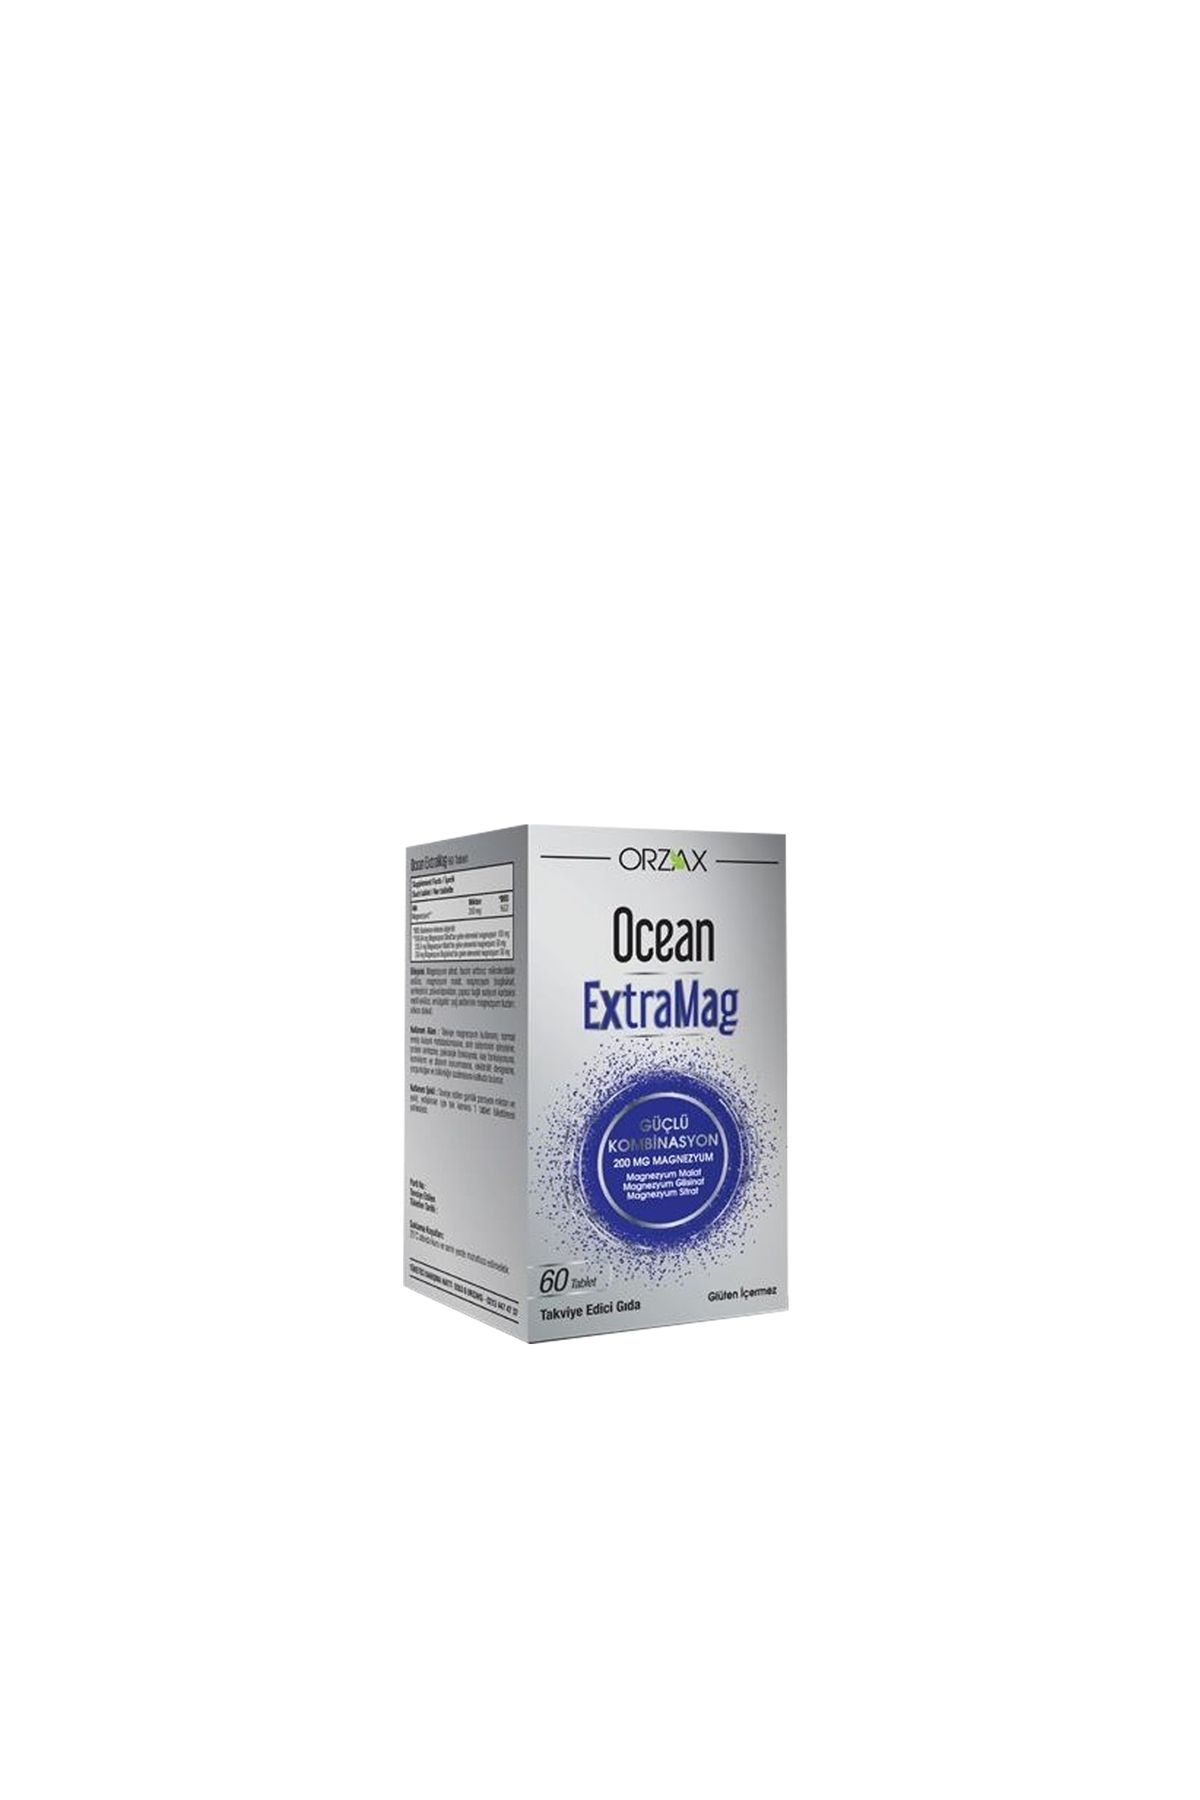 Ocean ExtraMag Üçlü Kombinasyon Takviye Edici Gıda 60 Tablet Magnezyum Malat Bisglisinat Sitrat